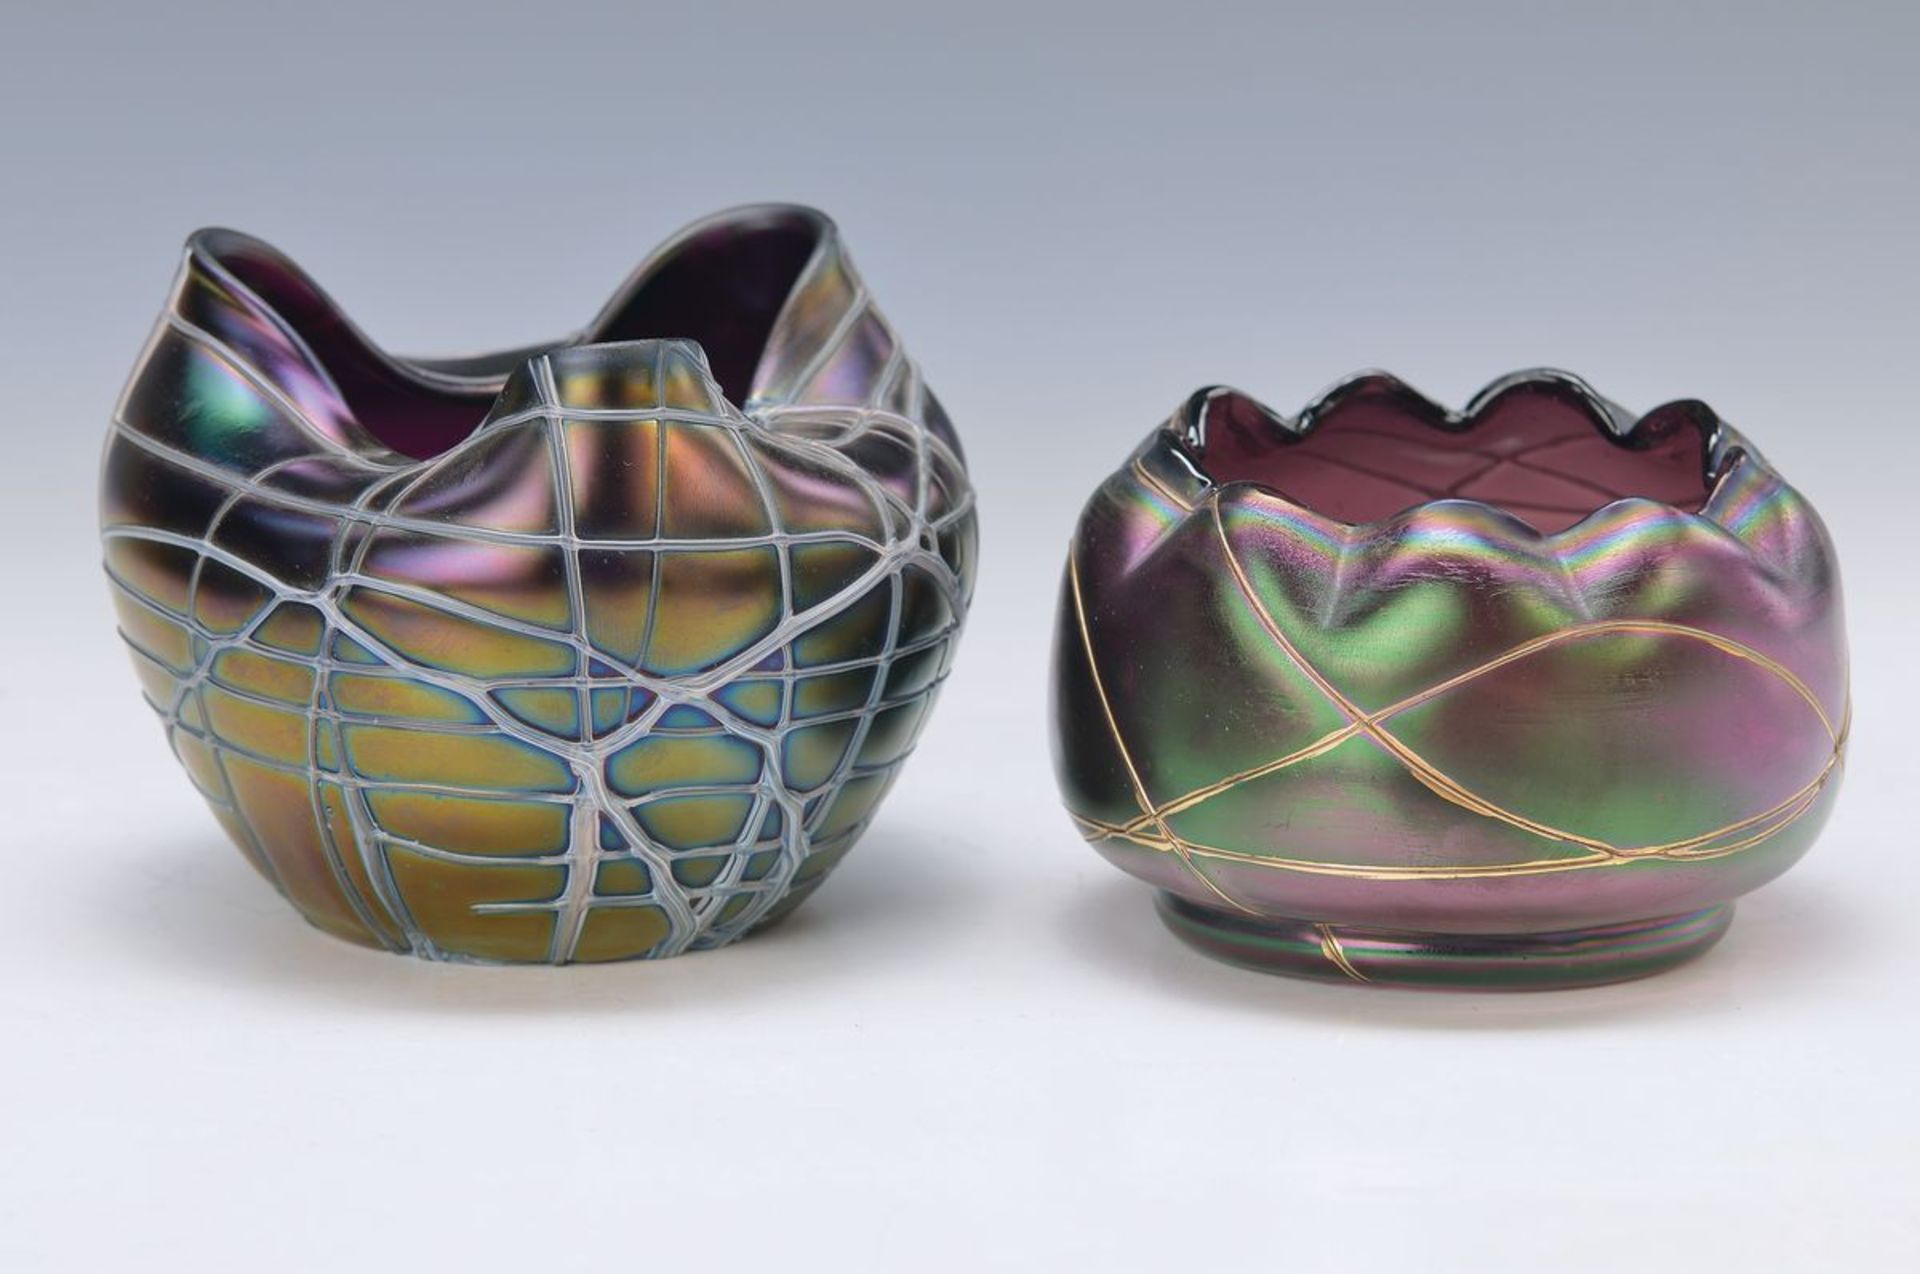 Zwei Schalen/ Vasen, Pallme König, um 1910, transparentes lilafarbenes Glas, mit aufgeschmolzenen